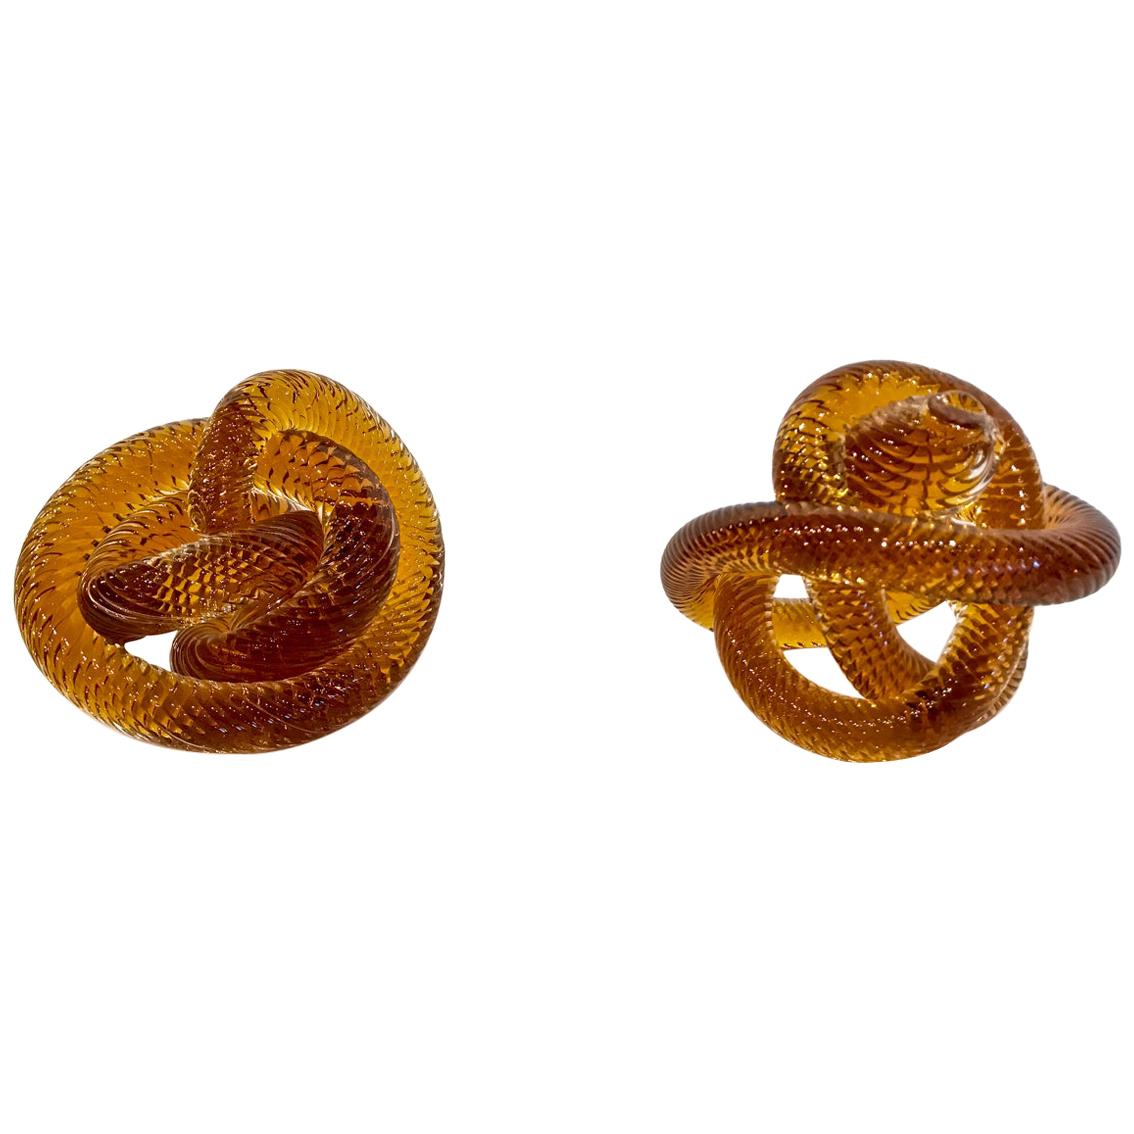 Pair of Murano Glass Knots